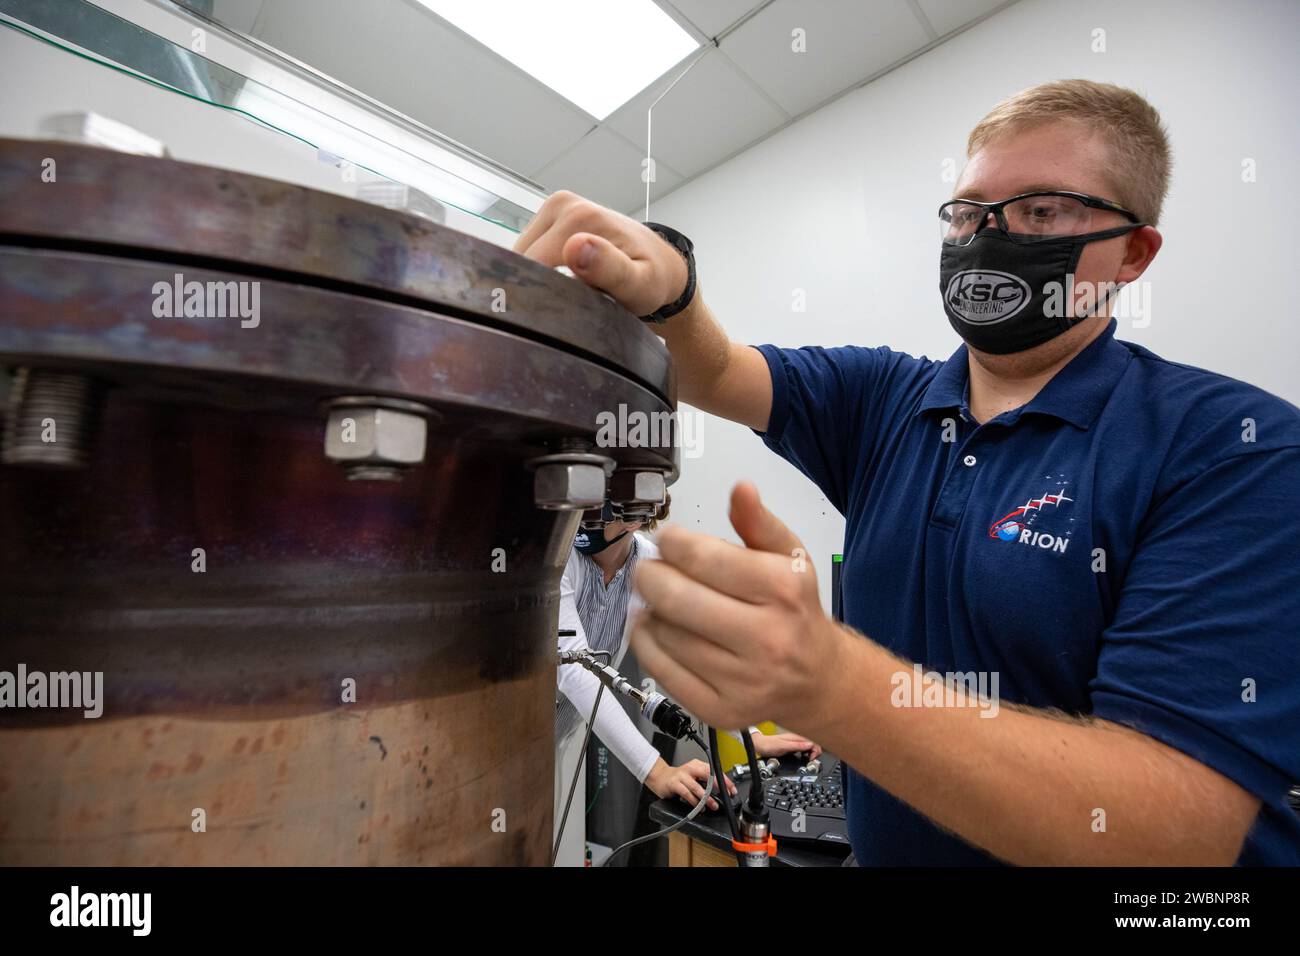 Evan Bell, ein Maschinenbauingenieur und Mitglied des gasförmigen Lunar Oxygen vom Regolith Elektrolyse-Projektteam im Kennedy Space Center der NASA in Florida, überprüft die Hardware, die verwendet wird, um Mondregolith zu schmelzen – Schmutz und Staub auf dem Mond aus zerquetschtem Gestein – während eines Tests in einem Labor im Kennedy's Neil Armstrong Operations and Checkout Building am 29. Oktober 2020. Galore wurde von der Space Technology Mission directorate der Agentur als Early Career Initiative ausgewählt, und das Team wurde beauftragt, ein Gerät zu entwickeln, das Mondregolith und tur schmelzen kann Stockfoto